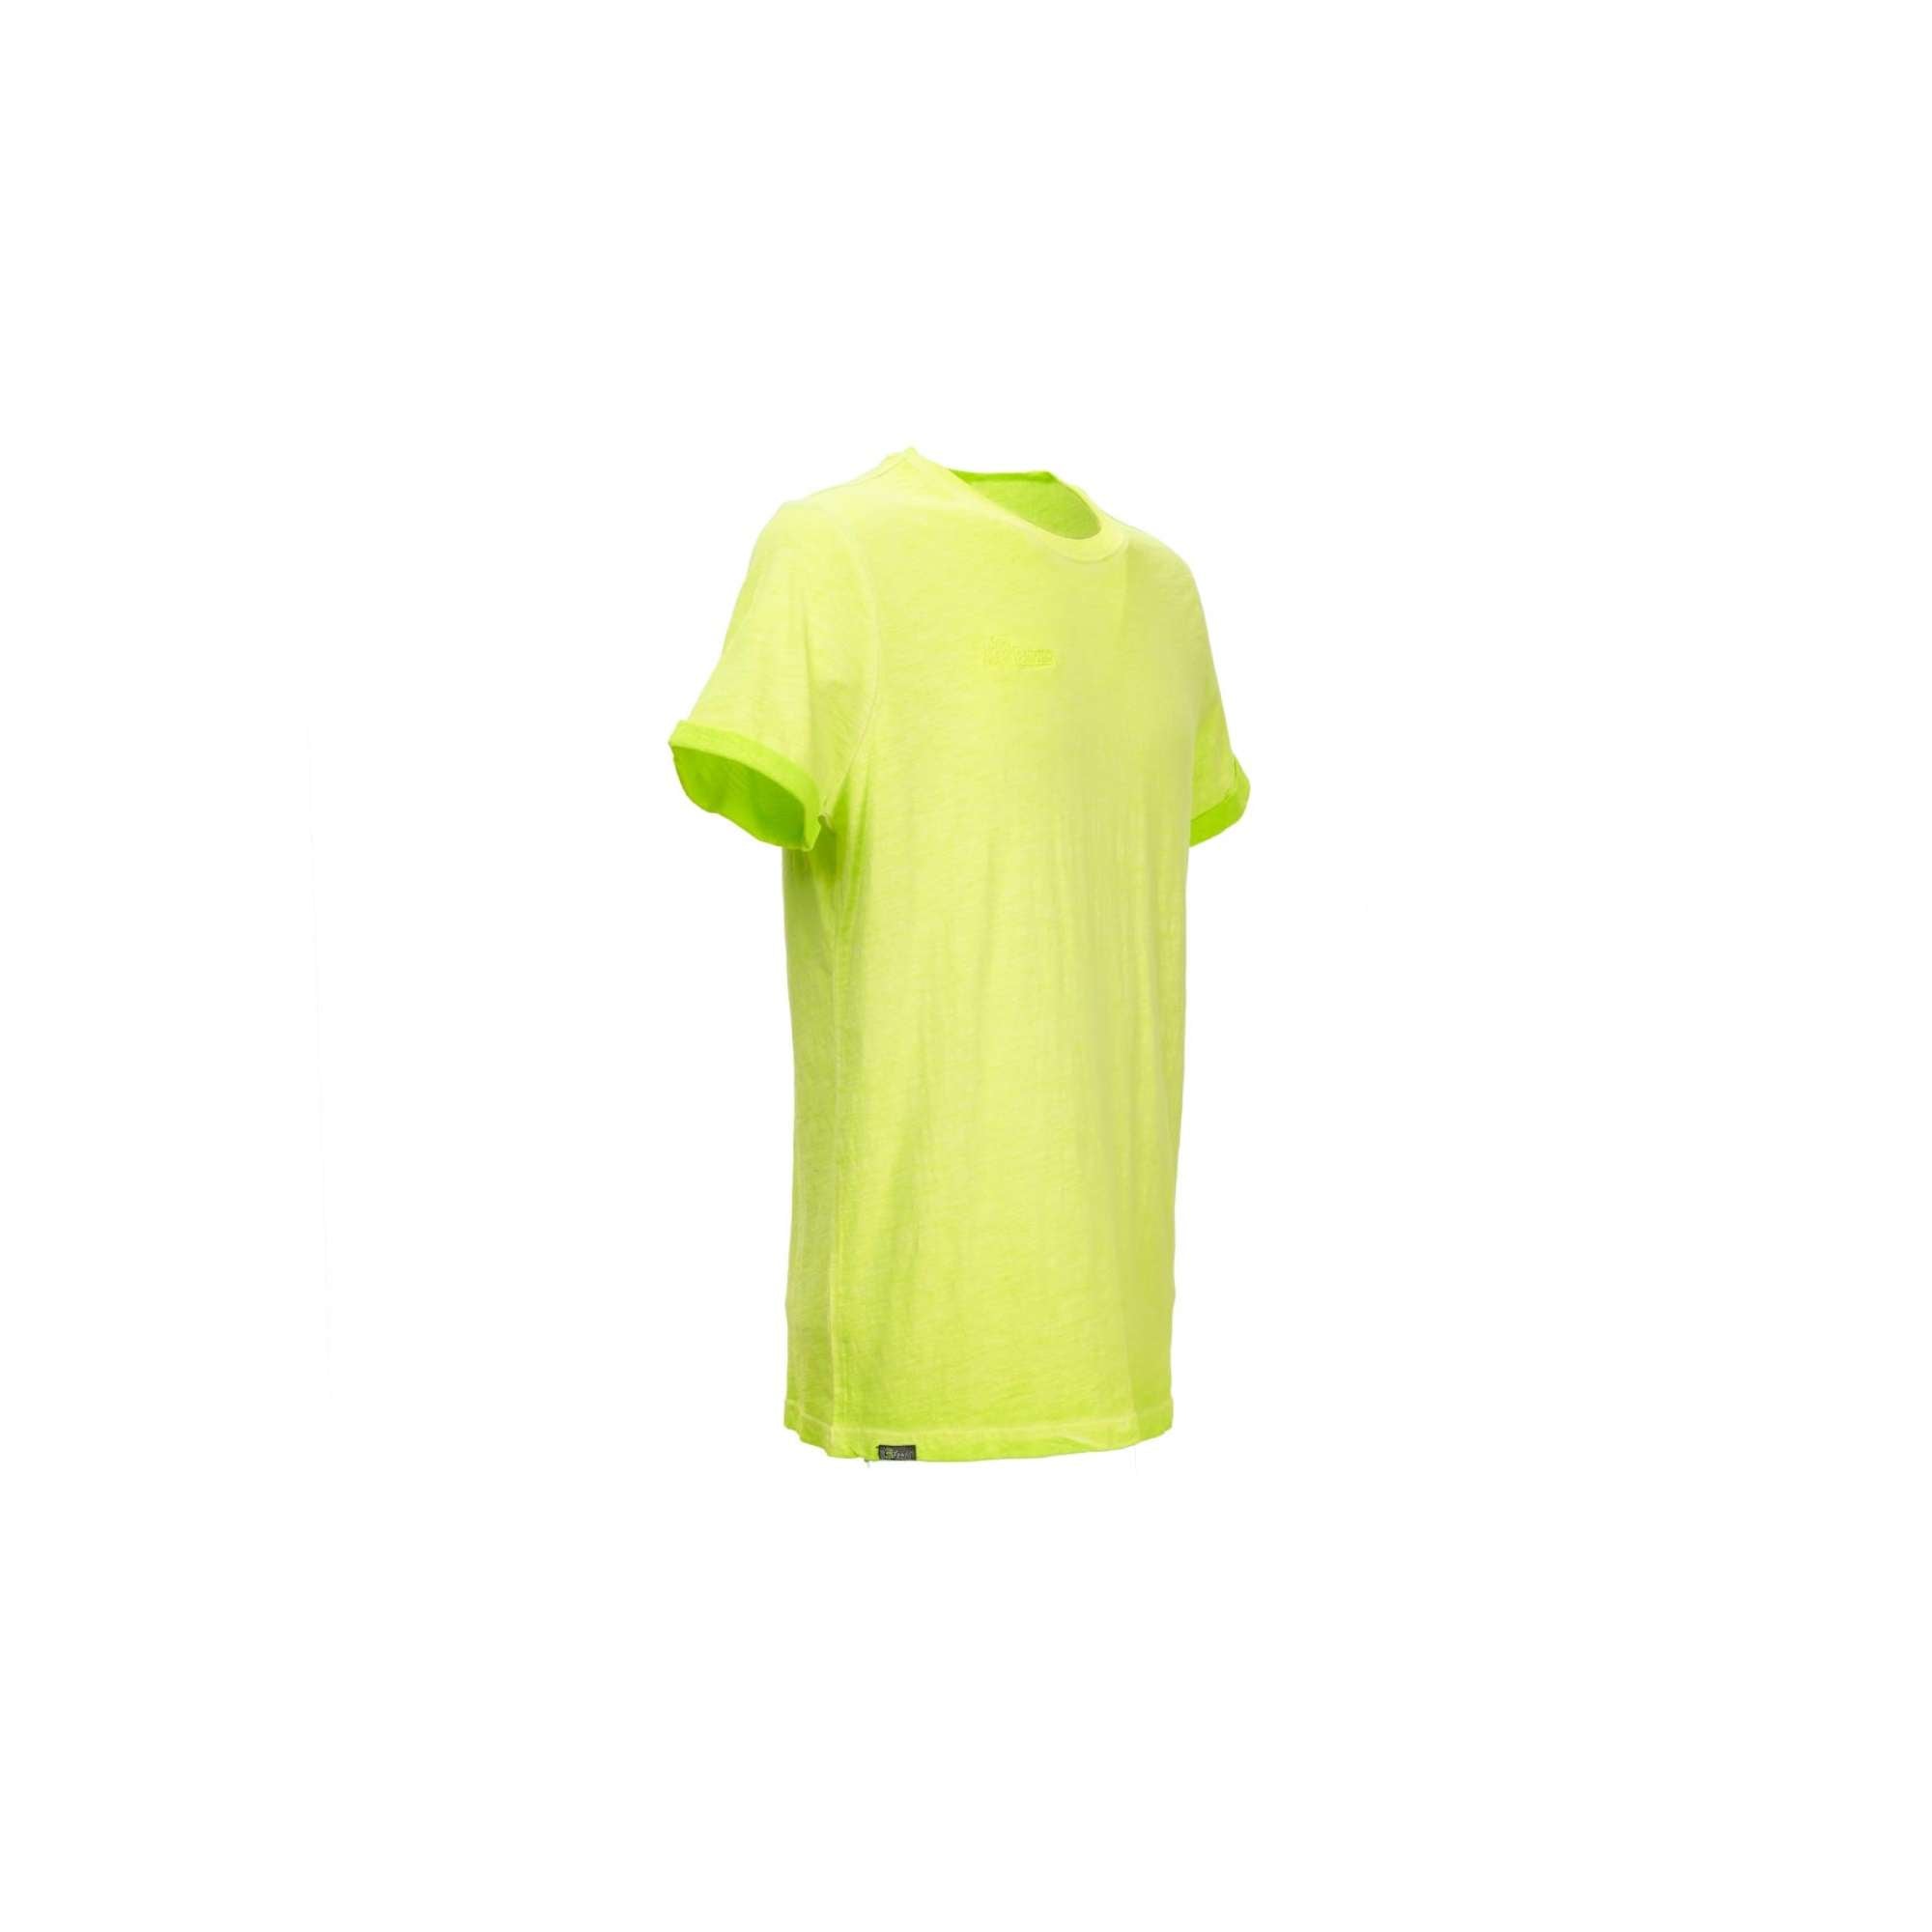 T-Shirt yellow fluo - U-Power EY195YF